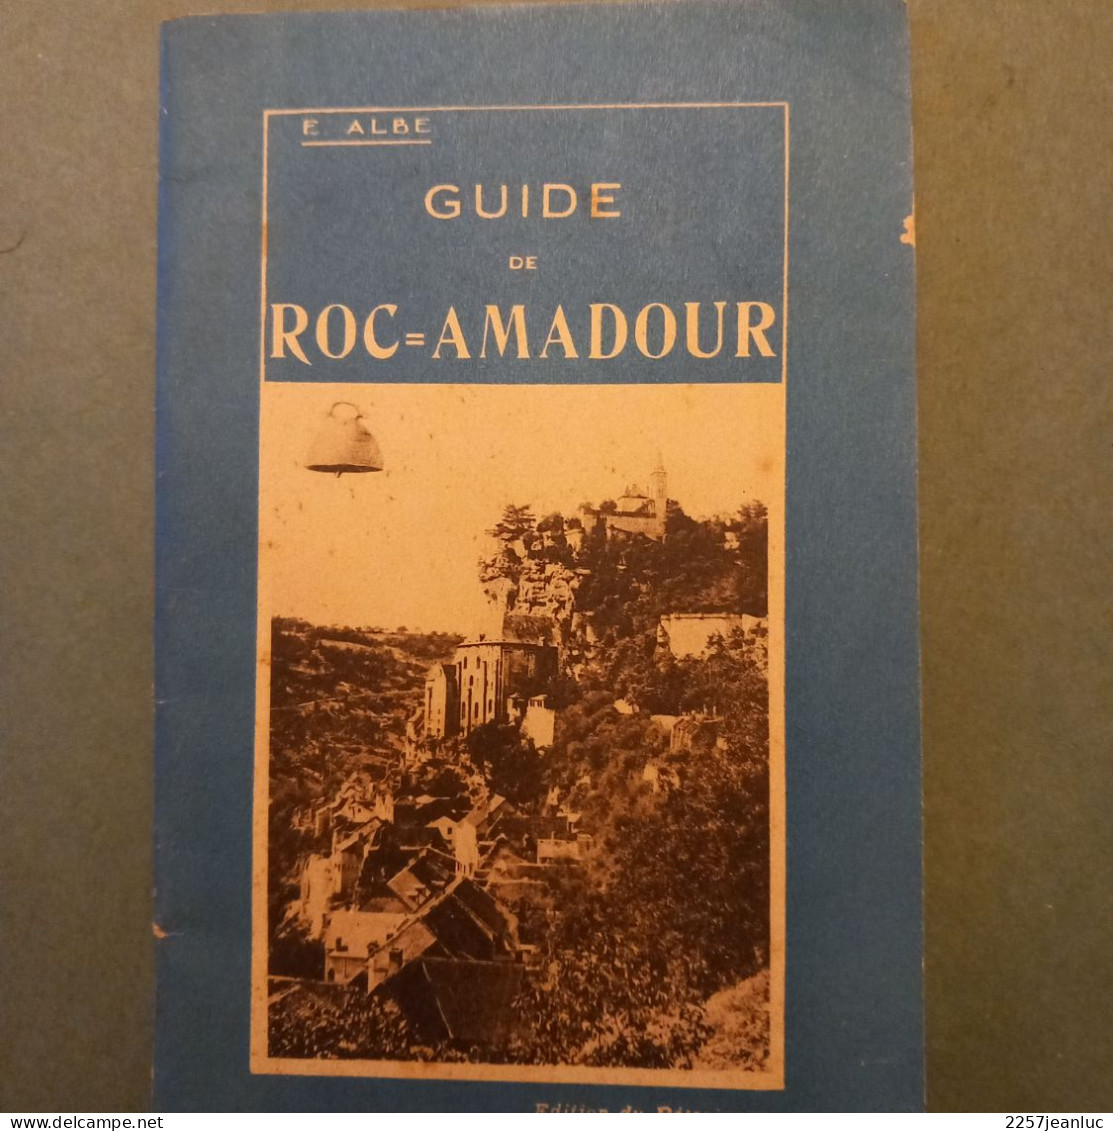 Guide De Roc Amadour E ALBE 1931 De 40 Pages - Michelin (guide)